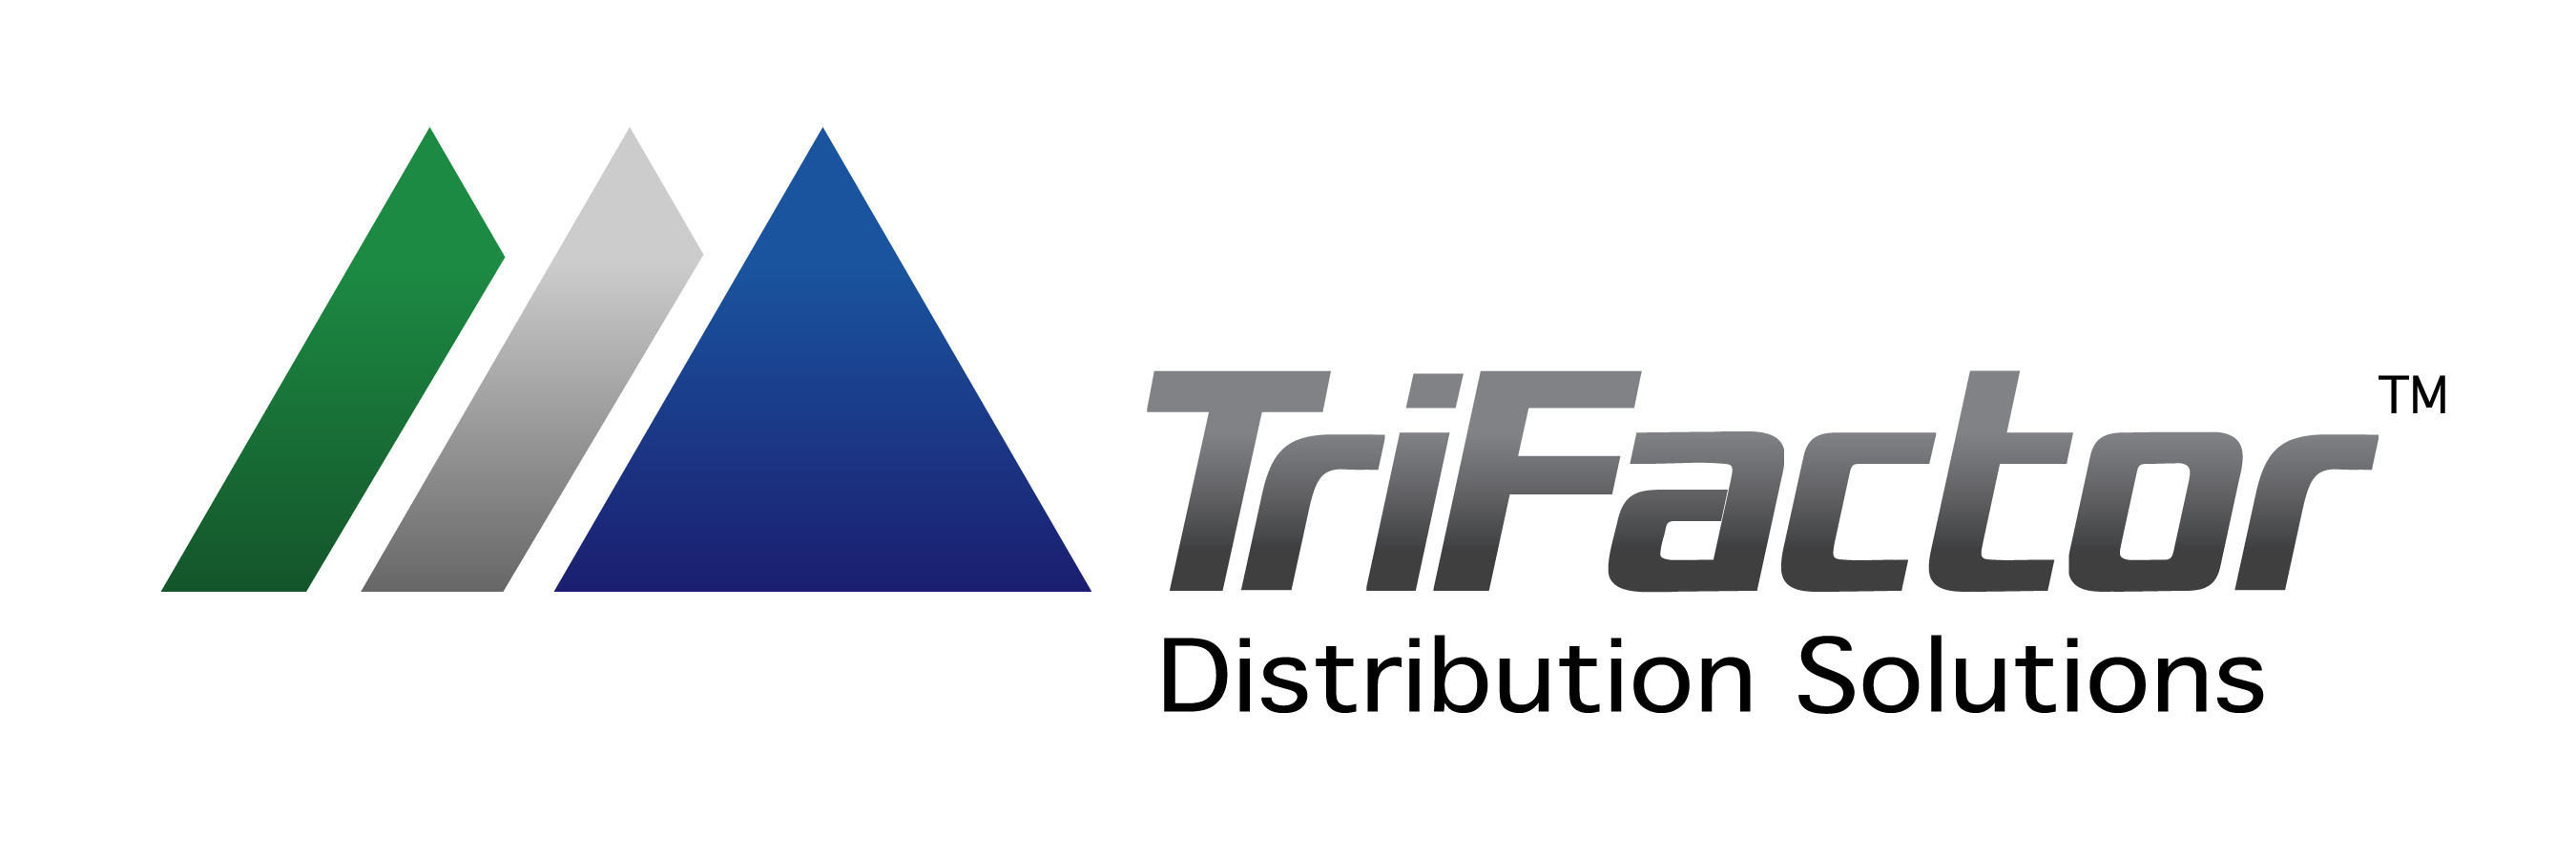 Trifactor, LLC logo. (PRNewsFoto/TriFactor, LLC) (PRNewsFoto/TRIFACTOR, LLC)